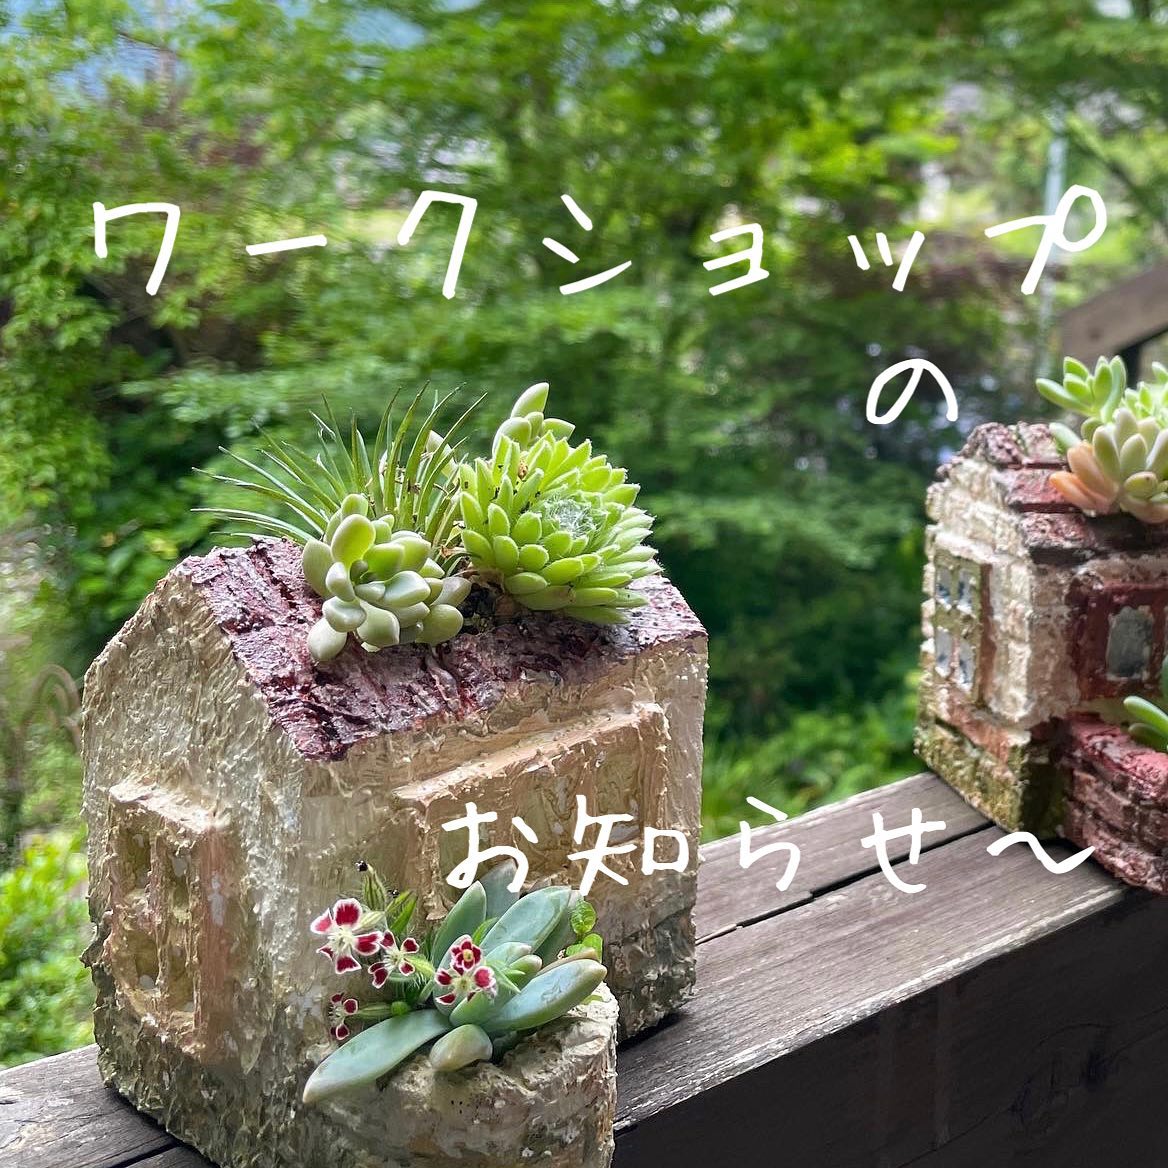 モルタルのワークショップ❣️-アトリエYuki-すごく楽しかったのでうちでやる事になりました！もちろん　花番地さんに来てもらいます。やってみませんか？お家を建てて壁を塗って着色します。7/24 月曜日　10:00〜16:00ご興味のある方はメッセージでお知らせ下さい️楽しい一日を過ごしましょう••#あとりえYuki #atorieyuki #福井県小浜市 #手芸店 #手芸屋 #手芸教室やってます #モルタルハウス #ワークショップやります #多肉植物のある暮し #花番地いつもありがとう️